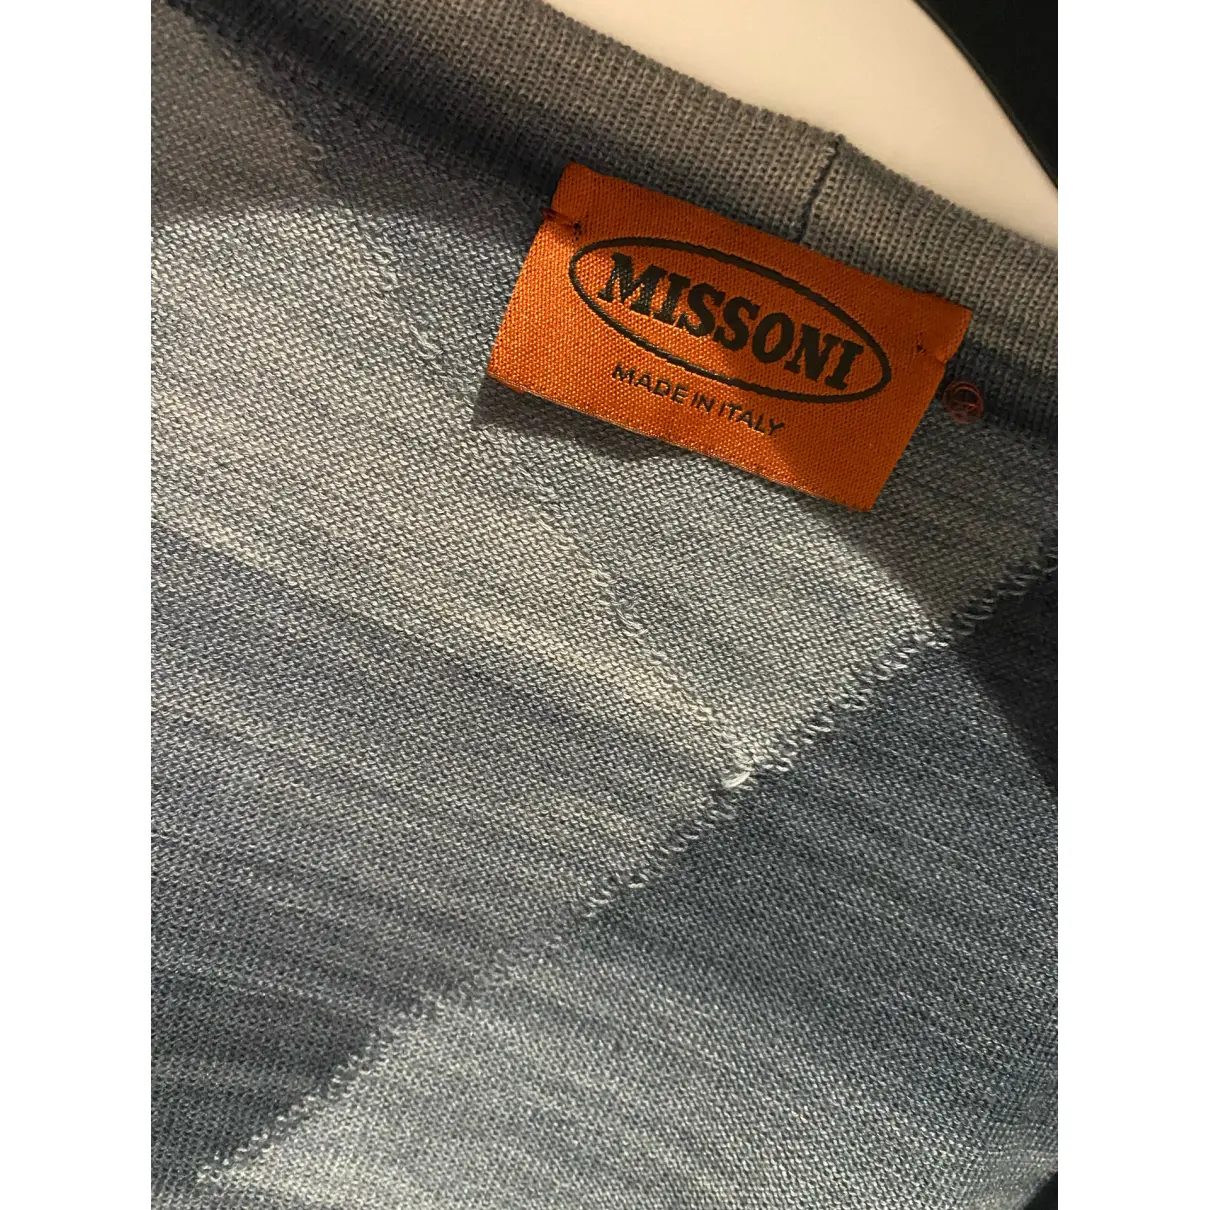 Buy Missoni Knitwear & sweatshirt online